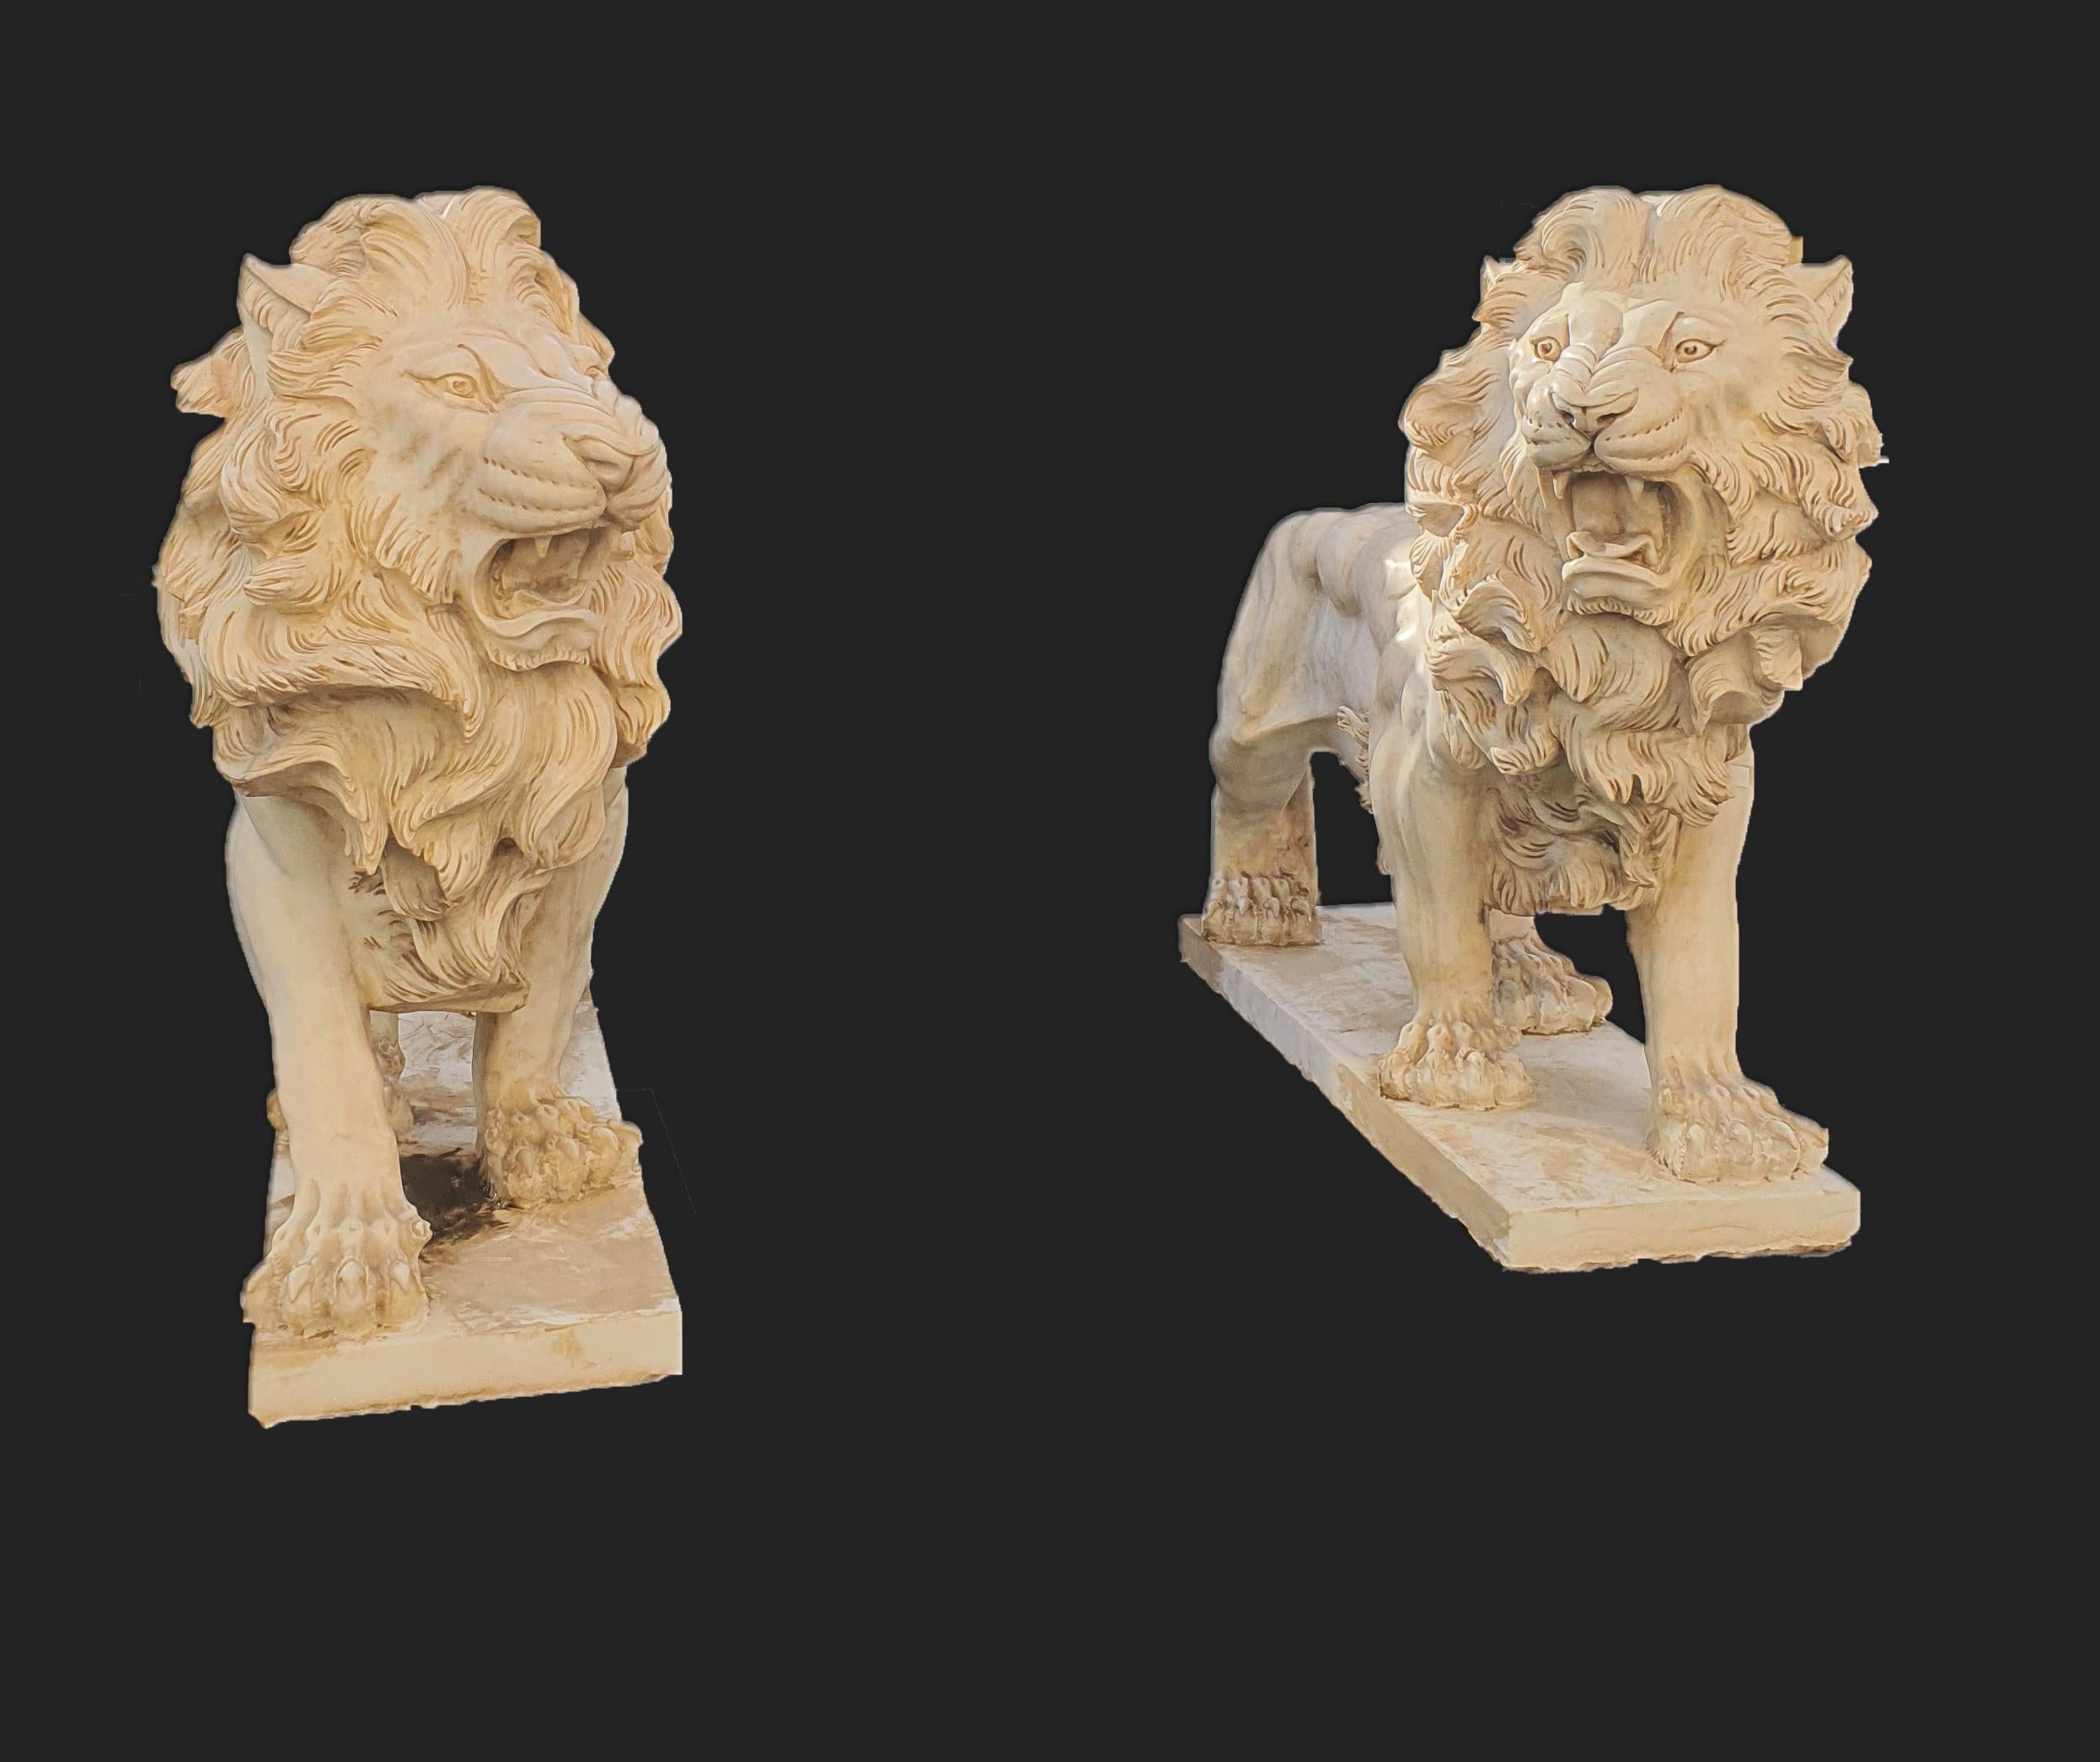 Elegantes Paar statuarischer Skulpturen aus weißem Marmor, die Löwen darstellen. Fein geschnitzte Skulptur bis ins kleinste Detail.